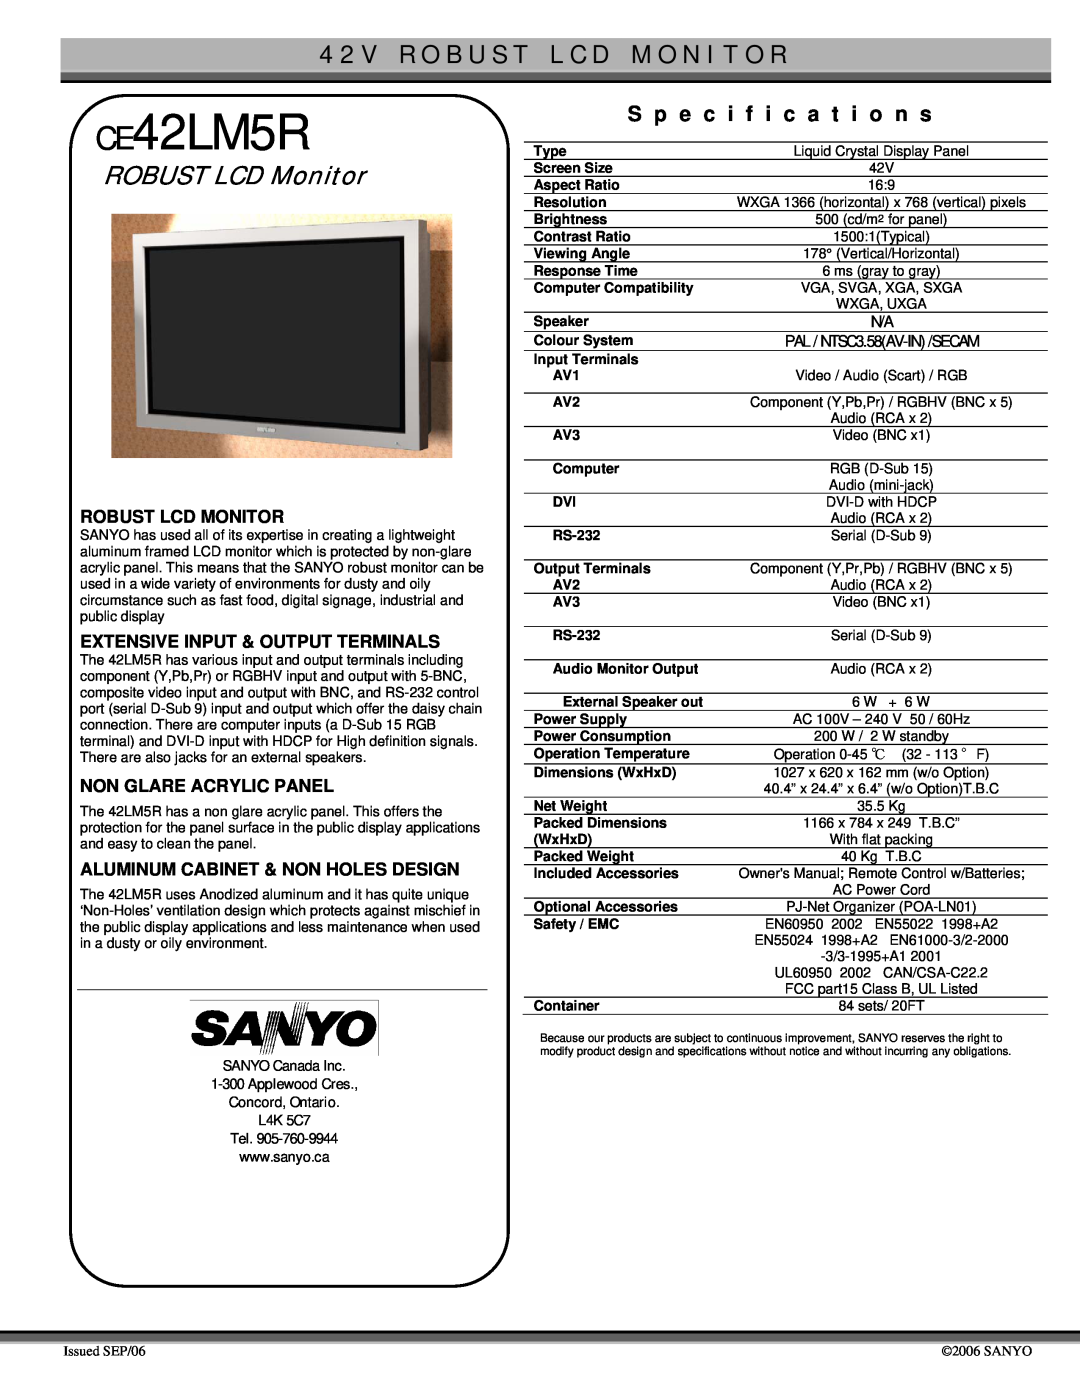 Sanyo specifications CE42LM5R, 4 2 V R O B U S T L C D M O N I T O R, ROBUST LCD Monitor, S p e c i f i c a t i o n s 